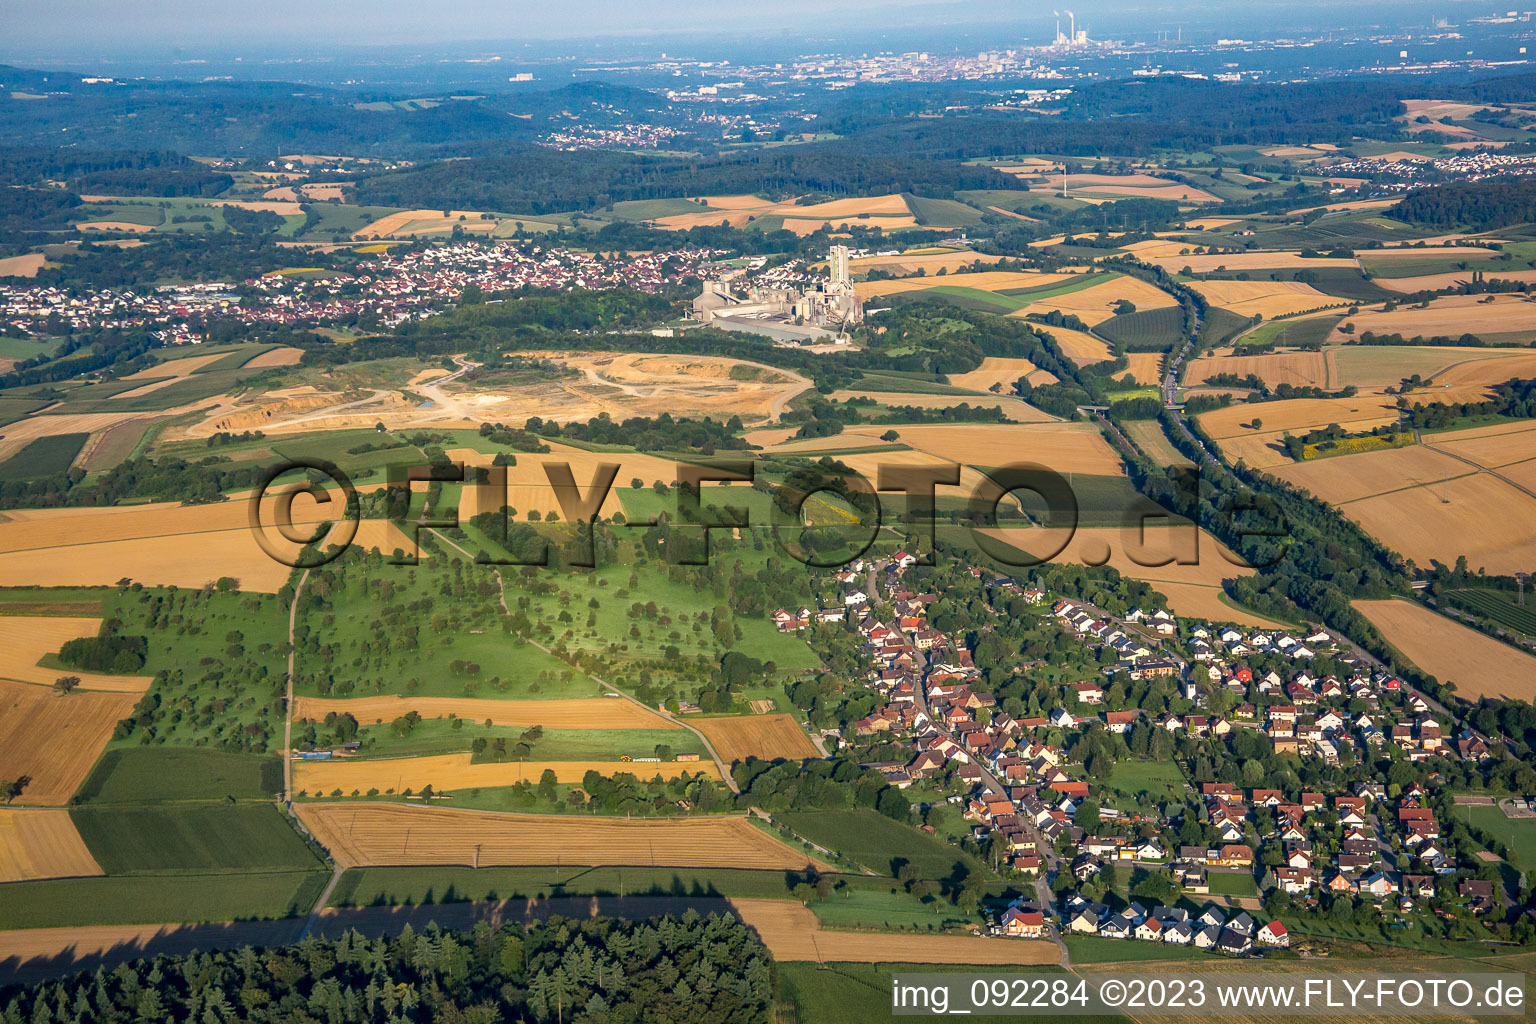 Vue aérienne de Devant la carrière de Walzbachtal à le quartier Dürrenbüchig in Bretten dans le département Bade-Wurtemberg, Allemagne